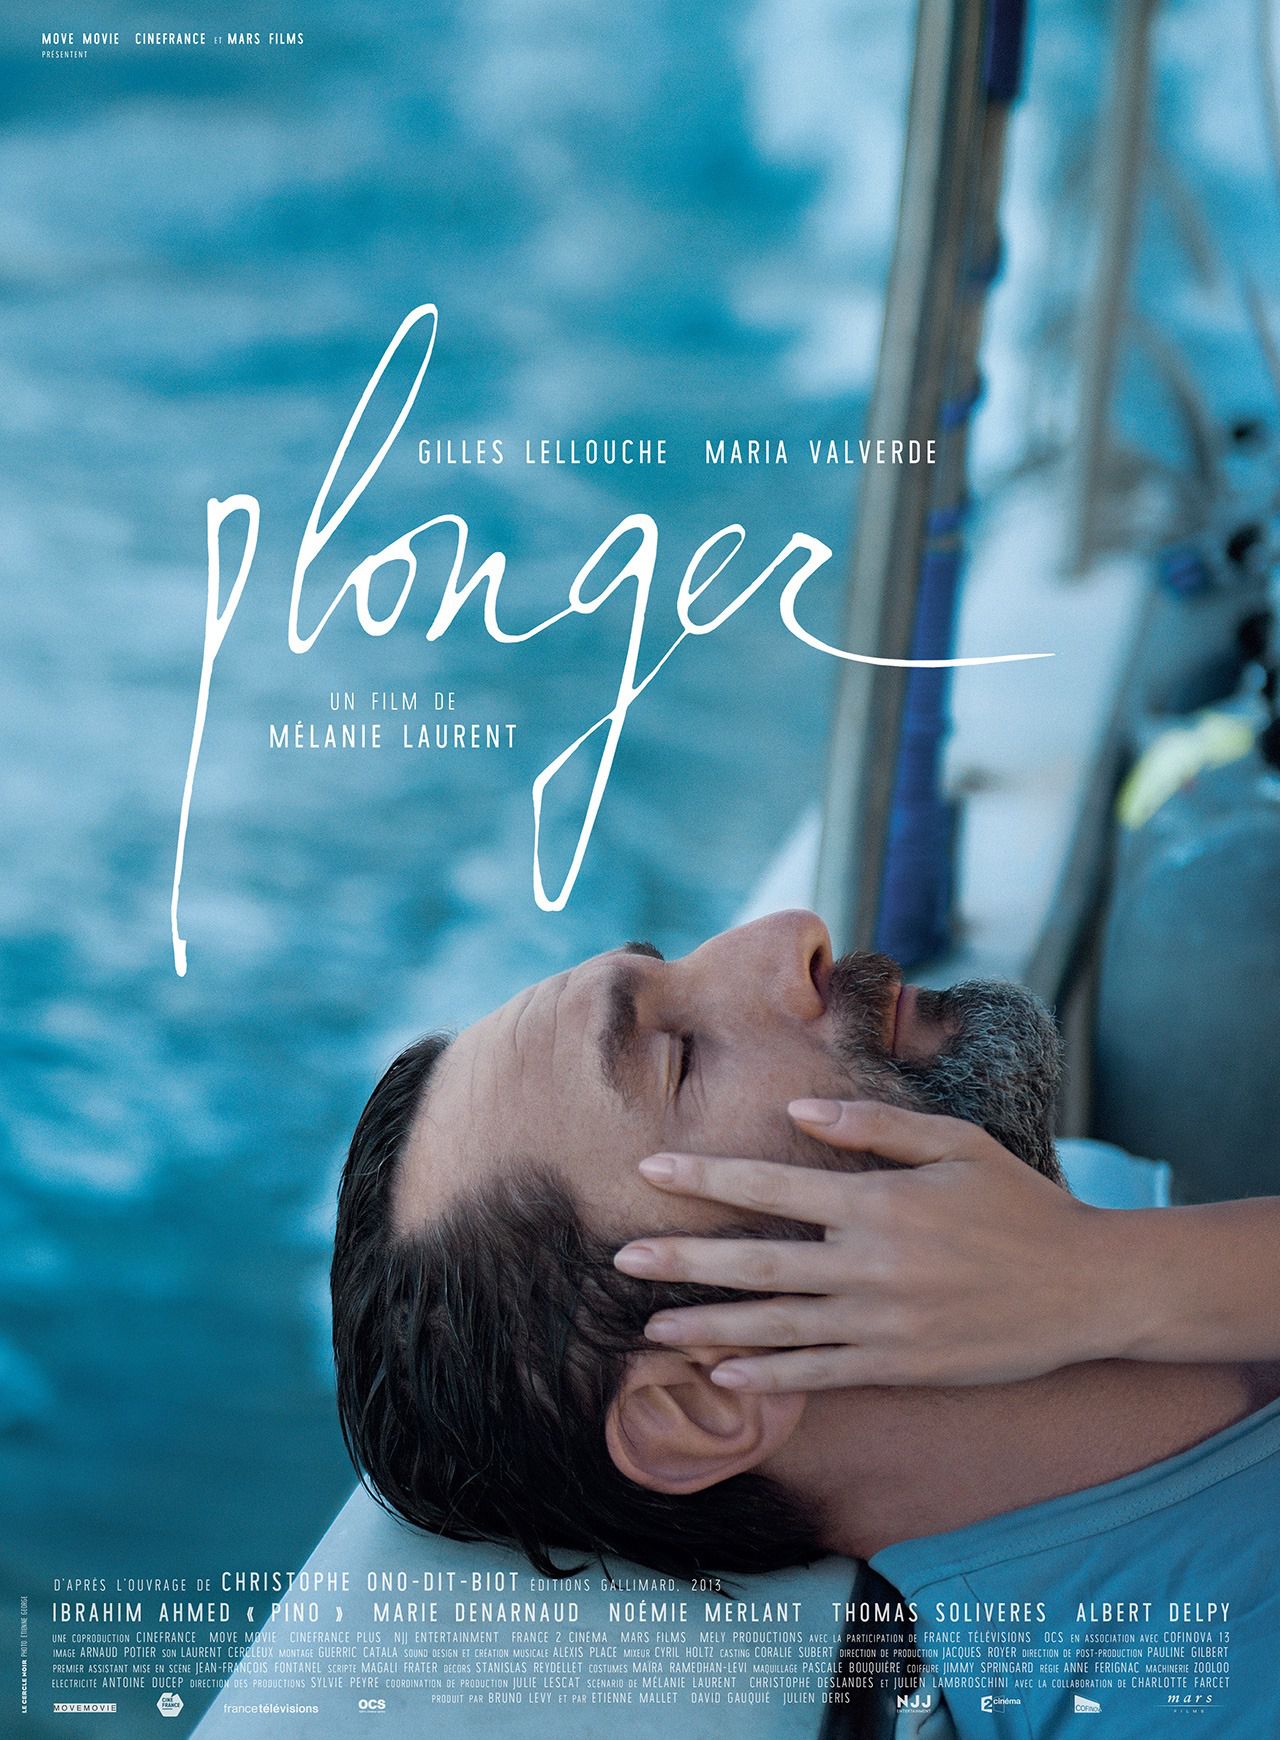 Plonger - Film (2017) streaming VF gratuit complet